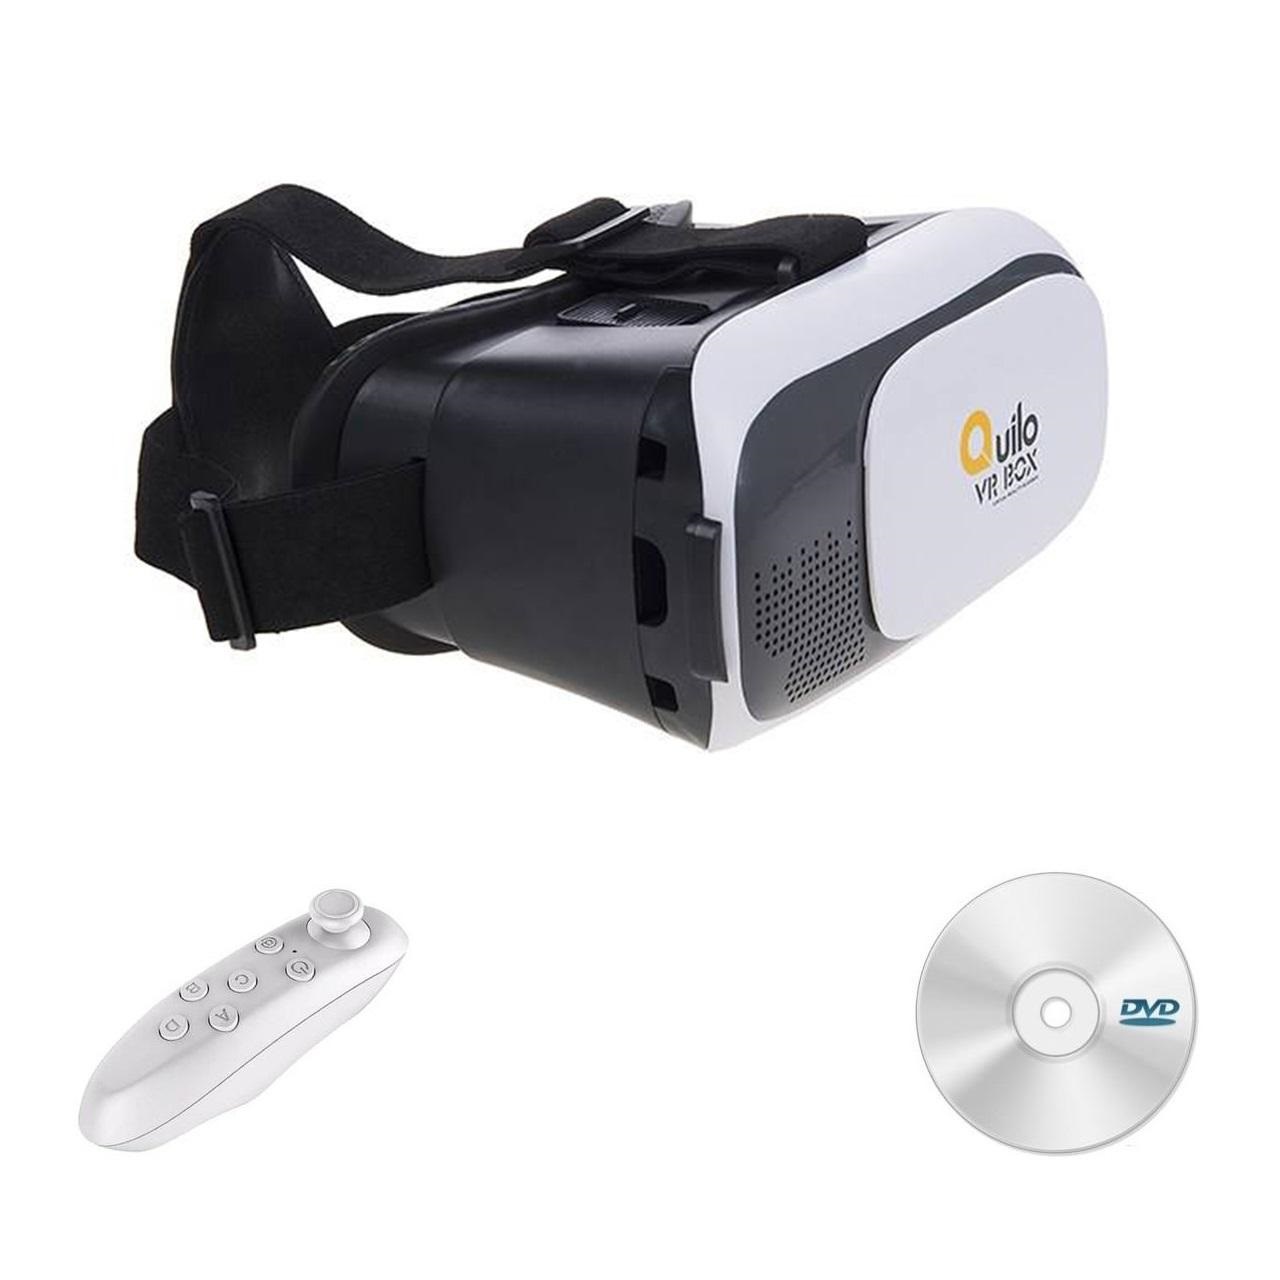 هدست واقعیت مجازی مدل VR Box به همراه ریموت کنترل و DVD نرم افزار